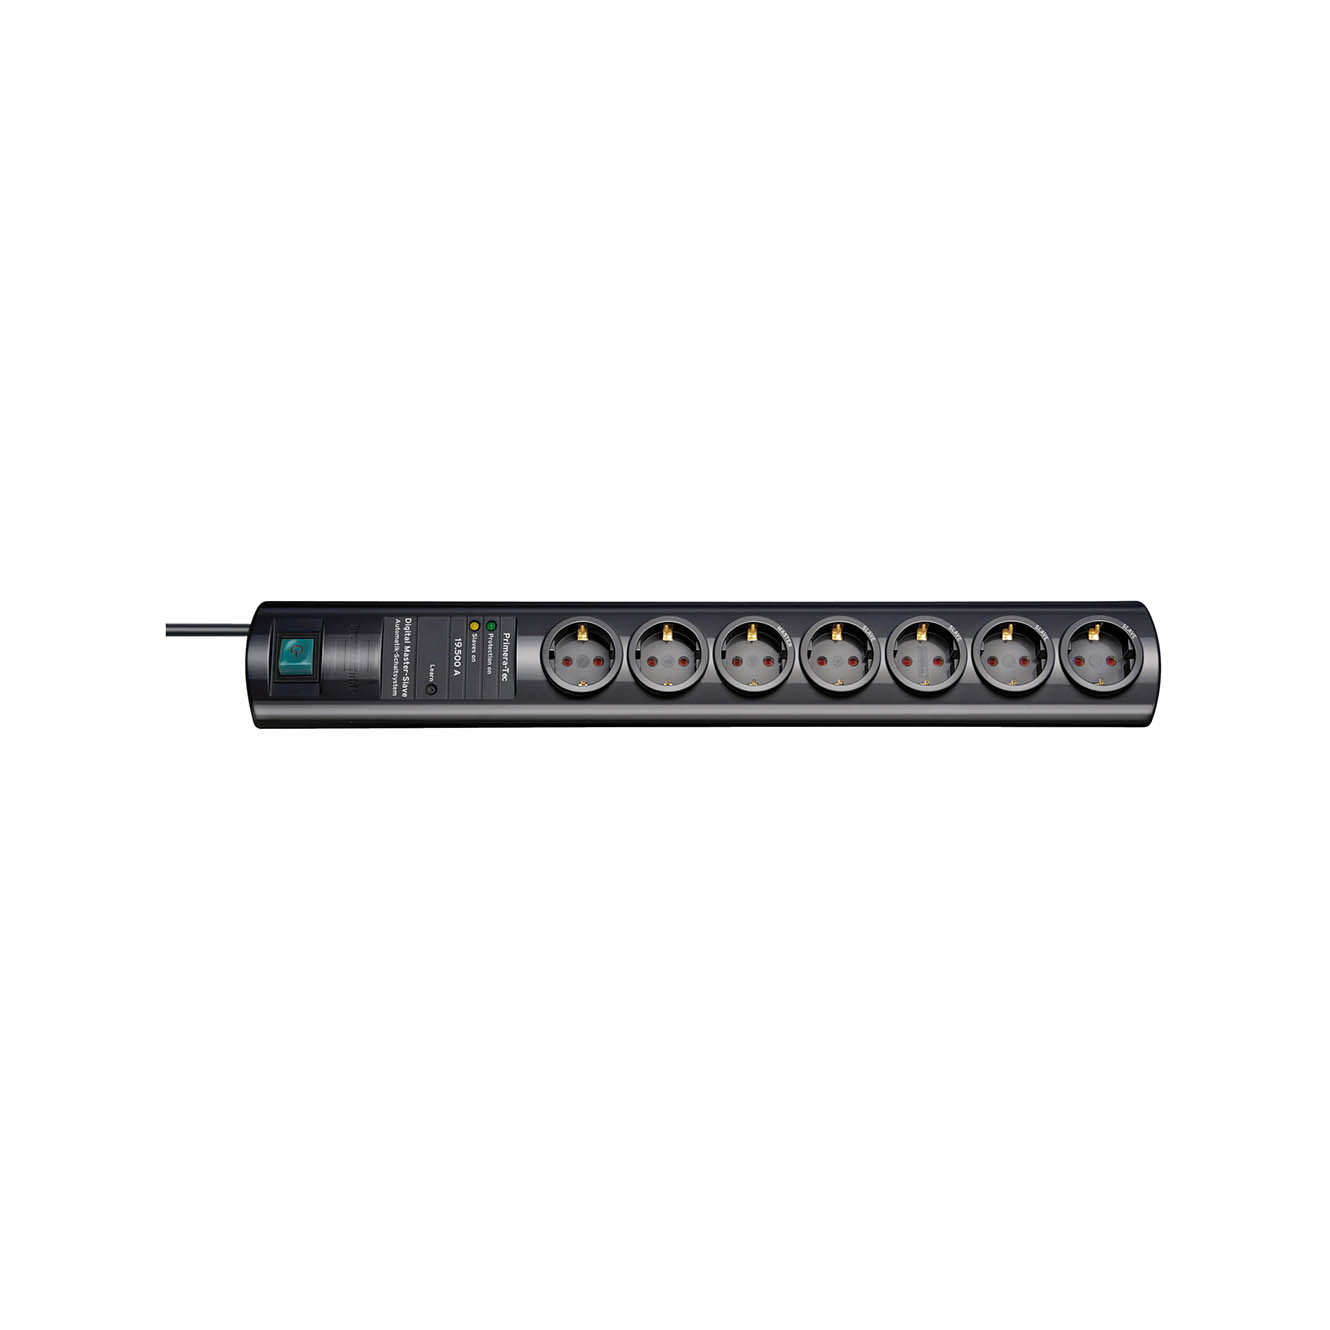 Сетевой фильтр Brennenstuhl Primera-Tec 19,5 А 7 розеток кабель 2 м H05VV-F 3G1,5 черный 1153300477